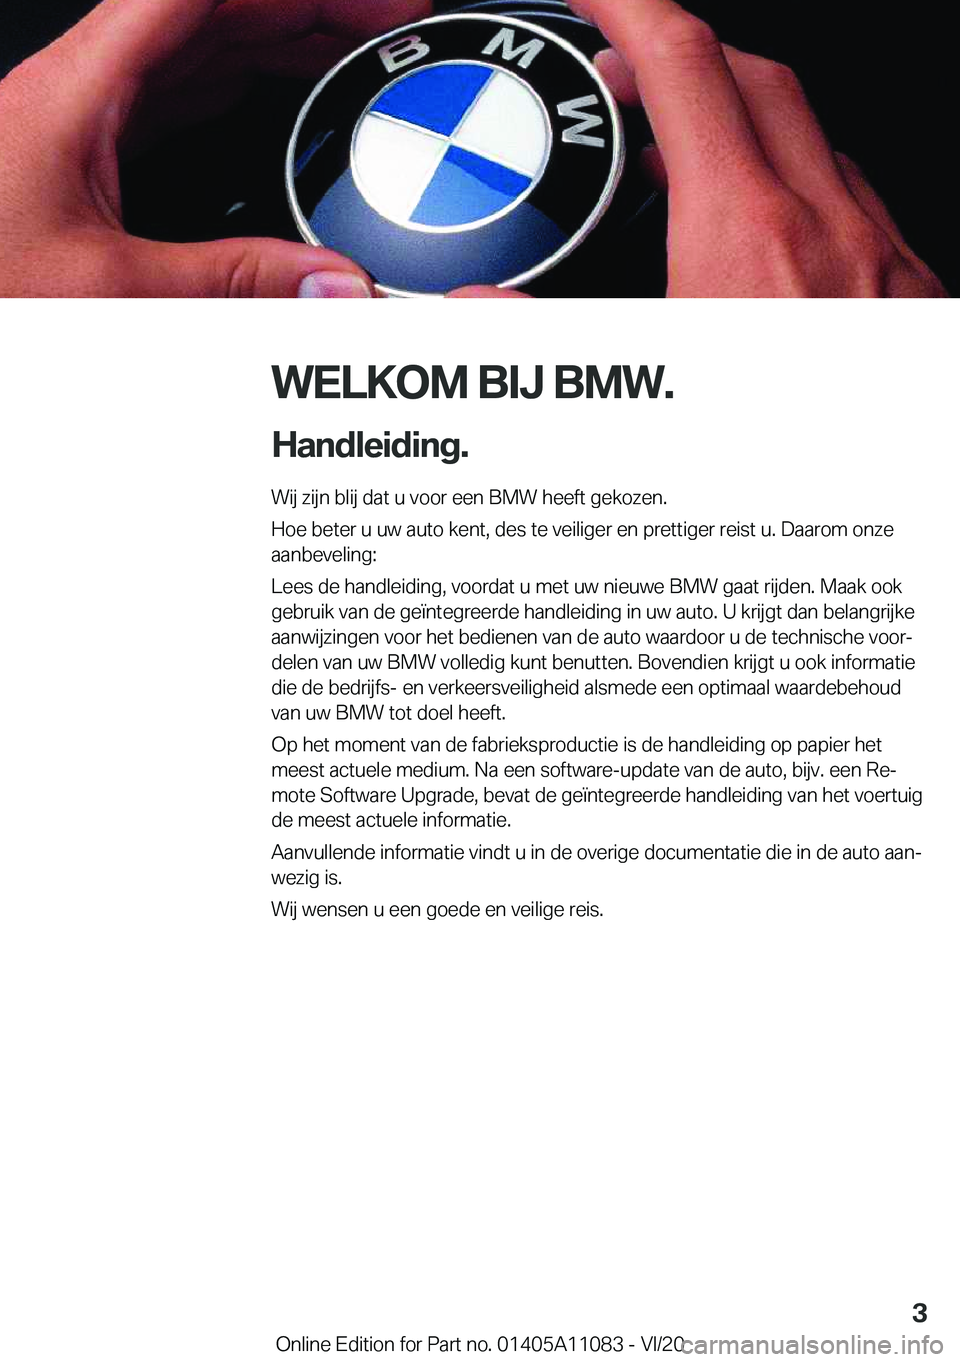 BMW 7 SERIES 2021  Instructieboekjes (in Dutch) �W�E�L�K�O�M��B�I�J��B�M�W�.
�H�a�n�d�l�e�i�d�i�n�g�. �W�i�j��z�i�j�n��b�l�i�j��d�a�t��u��v�o�o�r��e�e�n��B�M�W��h�e�e�f�t��g�e�k�o�z�e�n�.
�H�o�e��b�e�t�e�r��u��u�w��a�u�t�o��k�e�n�t�